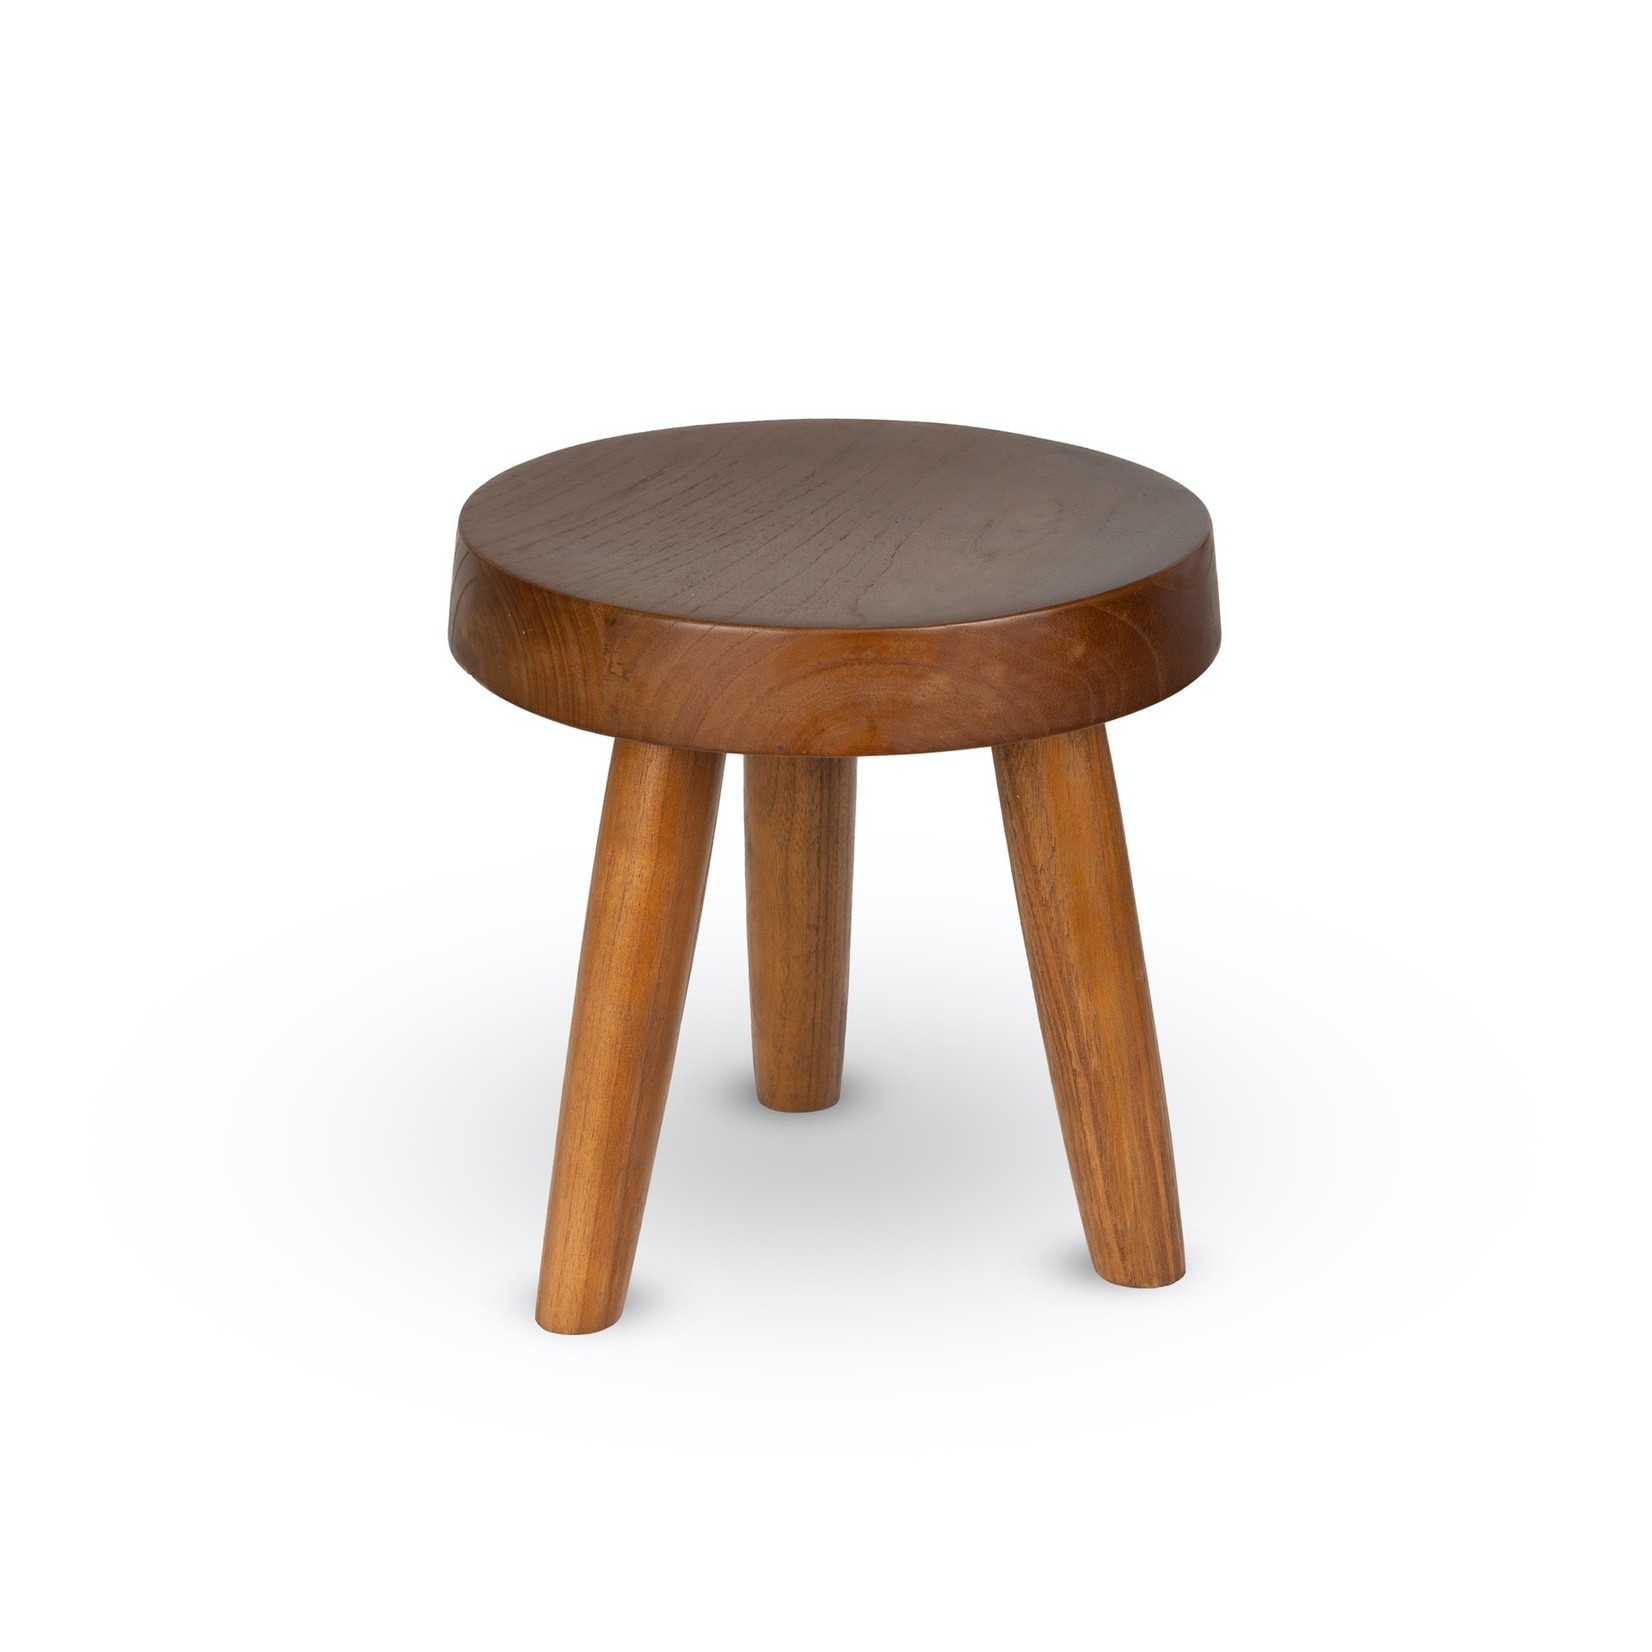 DETJER Chandigarh style wooden stool - Dark brown